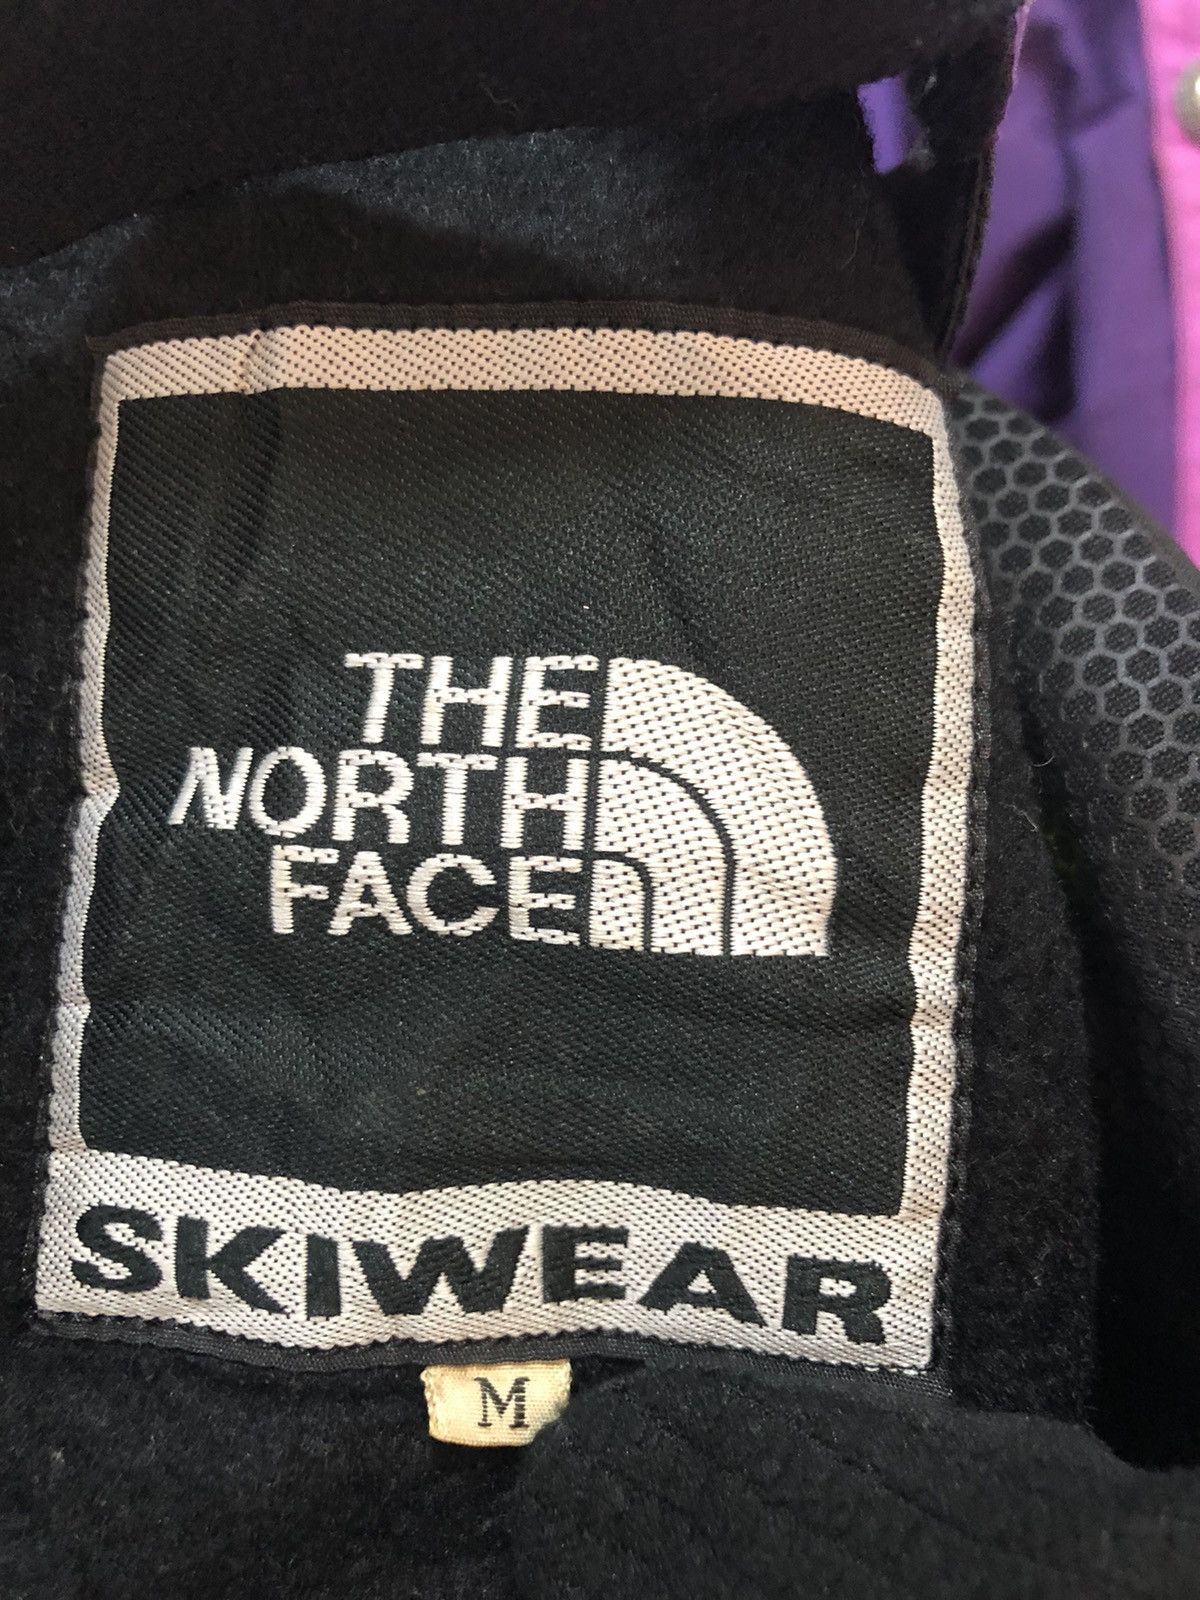 The north face skiwear multicolour - 7